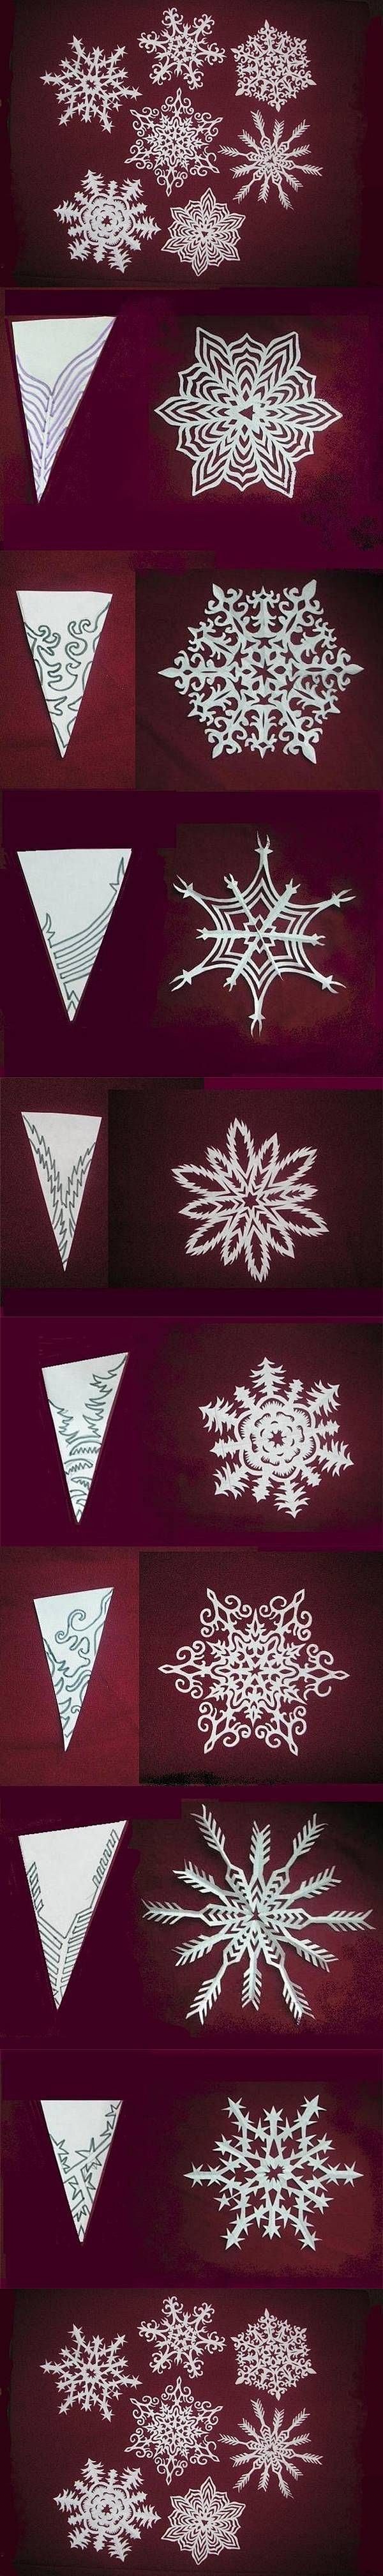 DIY Snowflakes Paper...